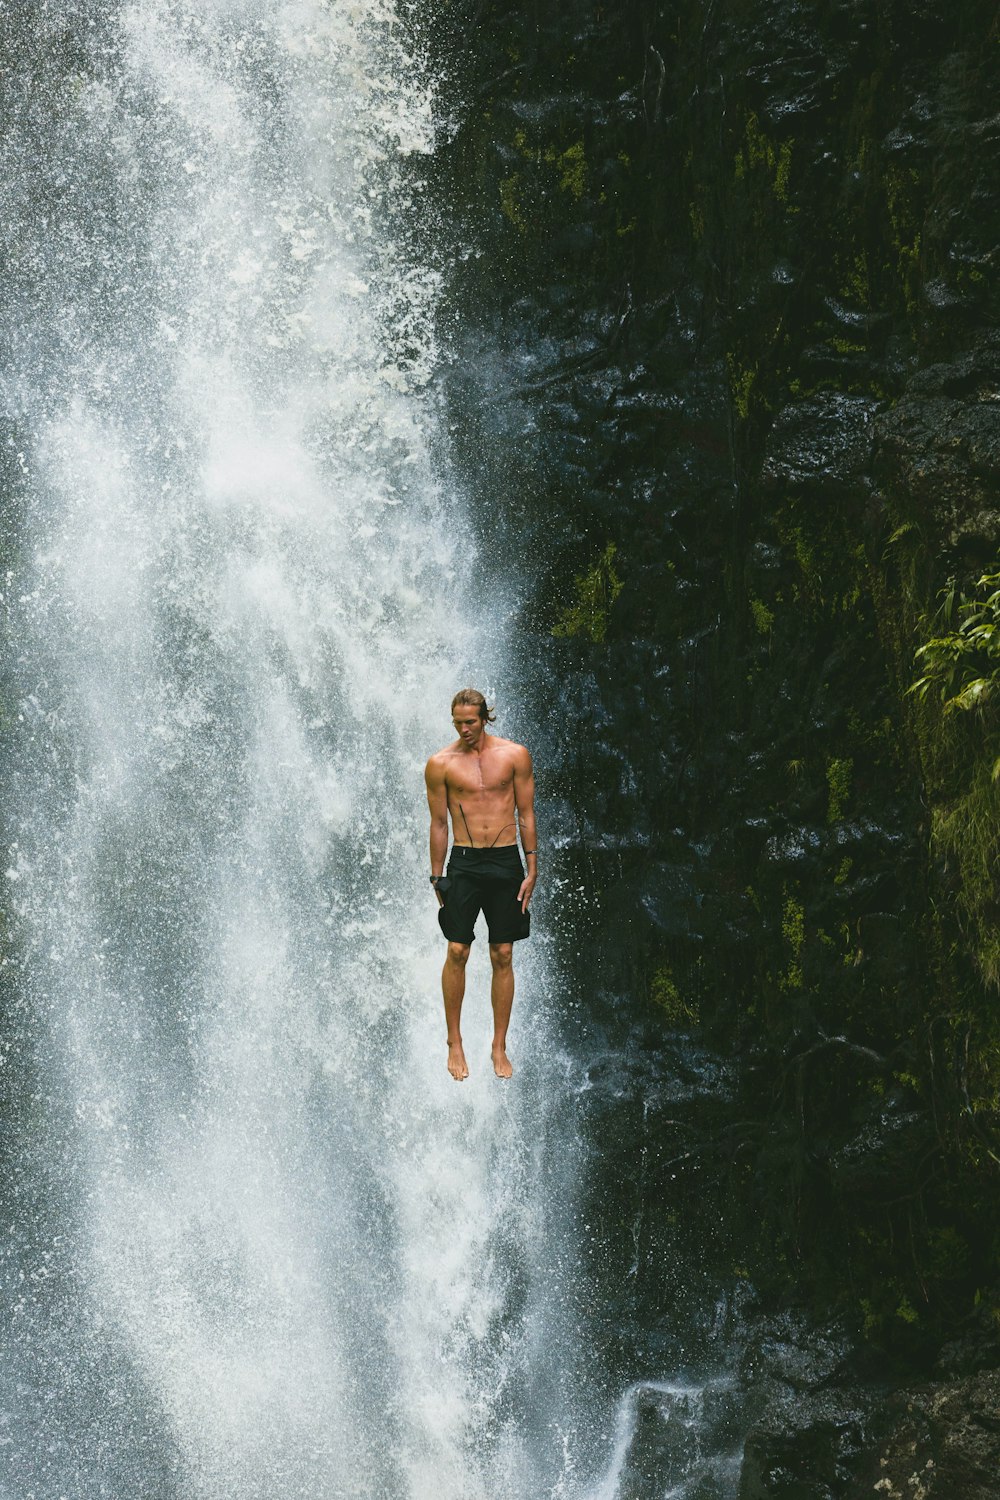 Hombre salta en cascadas